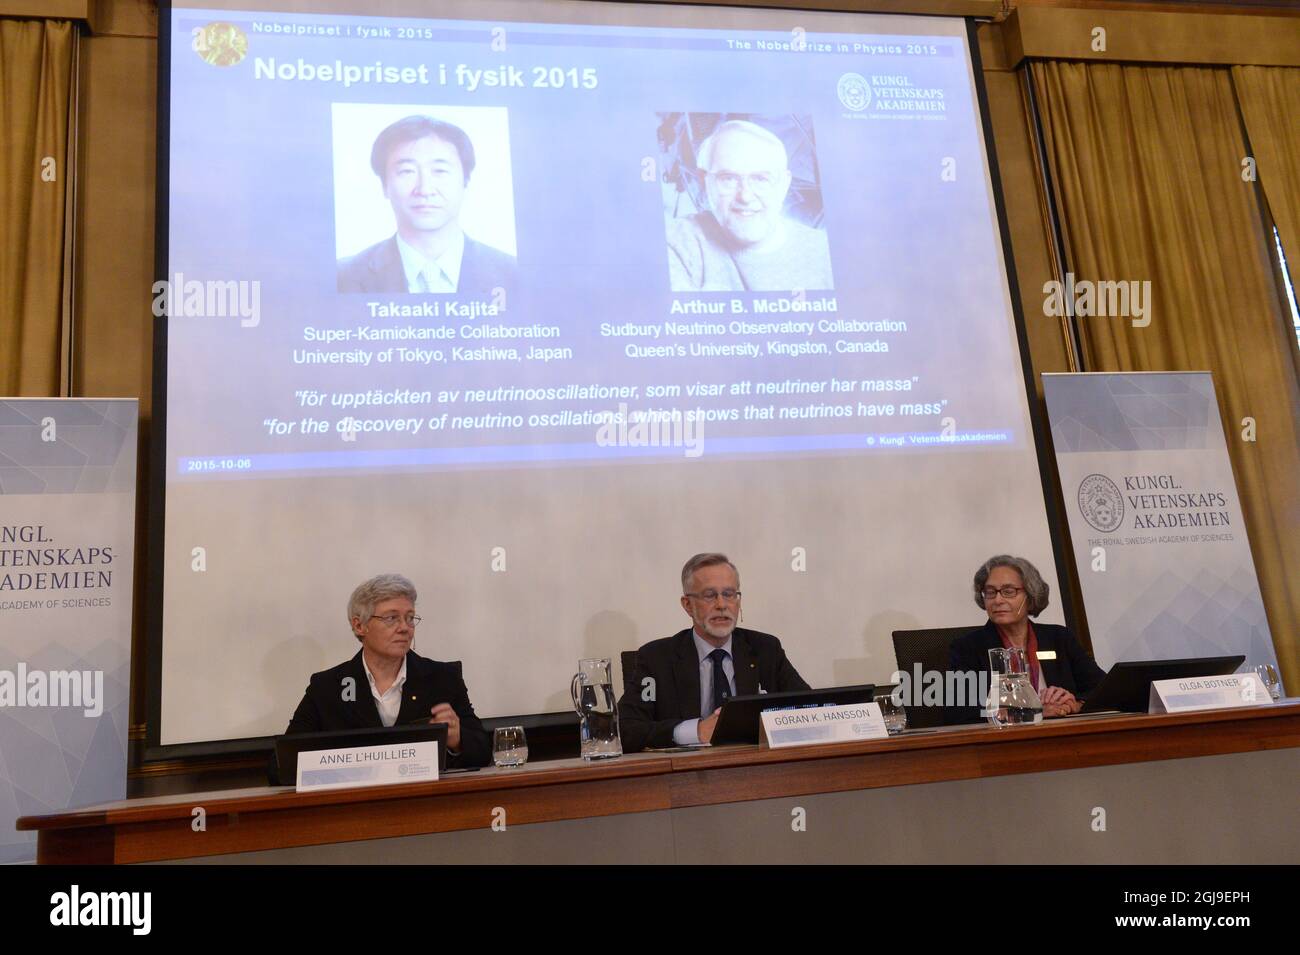 STOCKHOLM 2015-10-06 Mitglieder des Nobelkomitees am Karolinska Institue in Stockholm Schweden während der Ankündigung, dass der Nobelpreis für Physik 2015 gemeinsam an Takaaki Kajita an der Universität Tokio i Kashiwa verliehen wurde, Japan. Und Arthur B. McDonald von der Queen's University i Kingston i Canada' für die Entdeckung von Neutrinoschwingungen, die zeigen, dass Neutrinos Masse haben'. Foto: Fredrik Sandberg / TT / kod 10080 Stockfoto